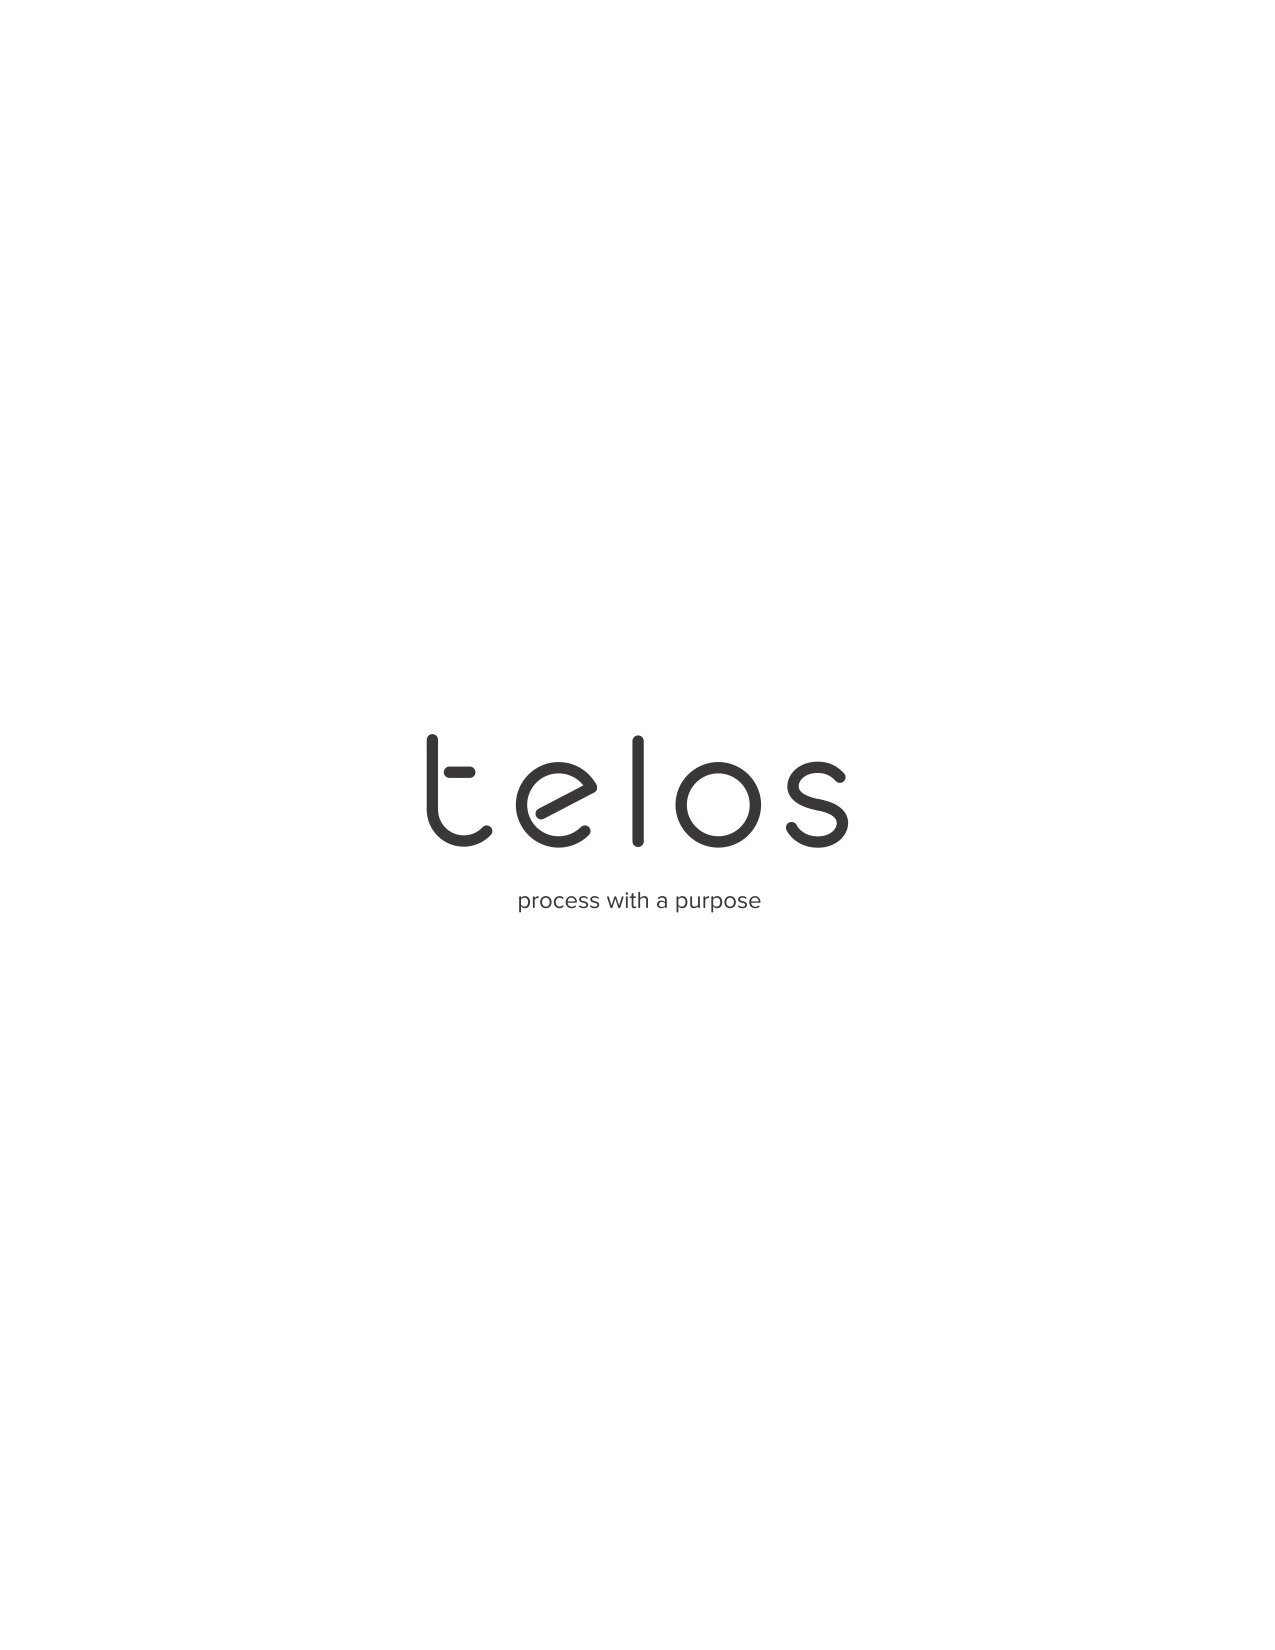 Telos_final_logo (2) (1)_For Dacia .jpg